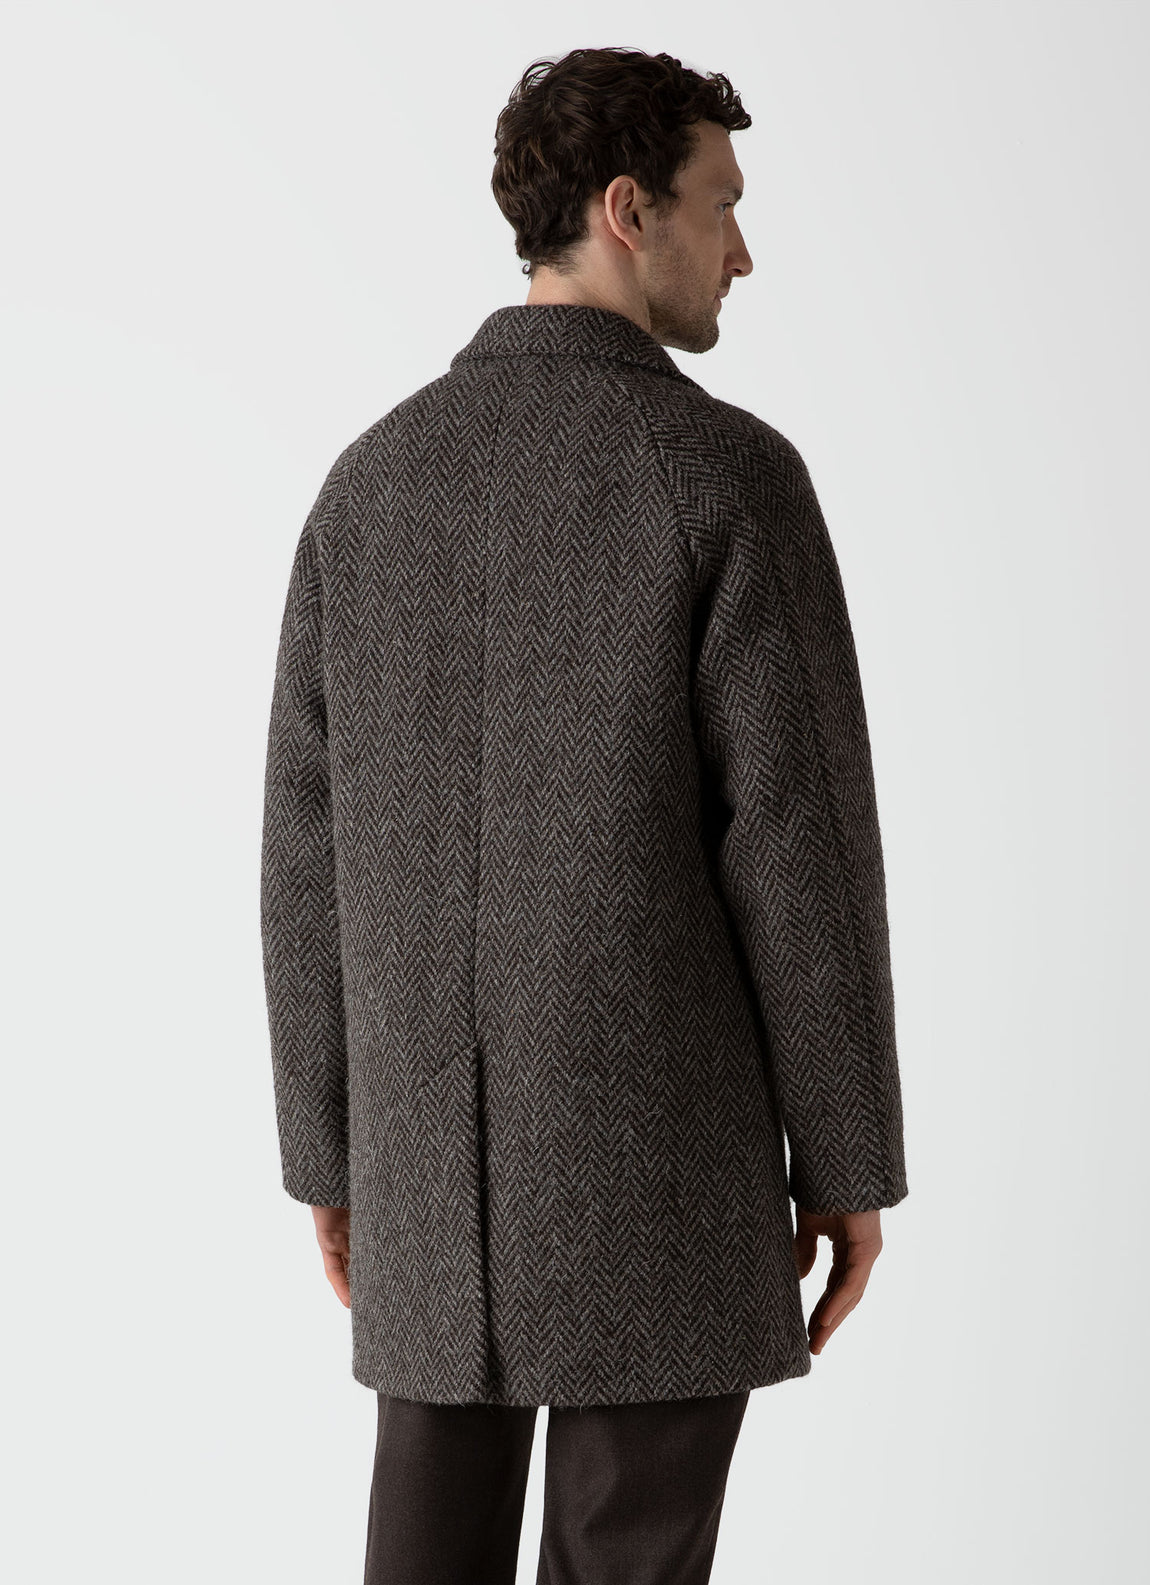 Men's British Wool Car Coat in Brown Herringbone | Sunspel